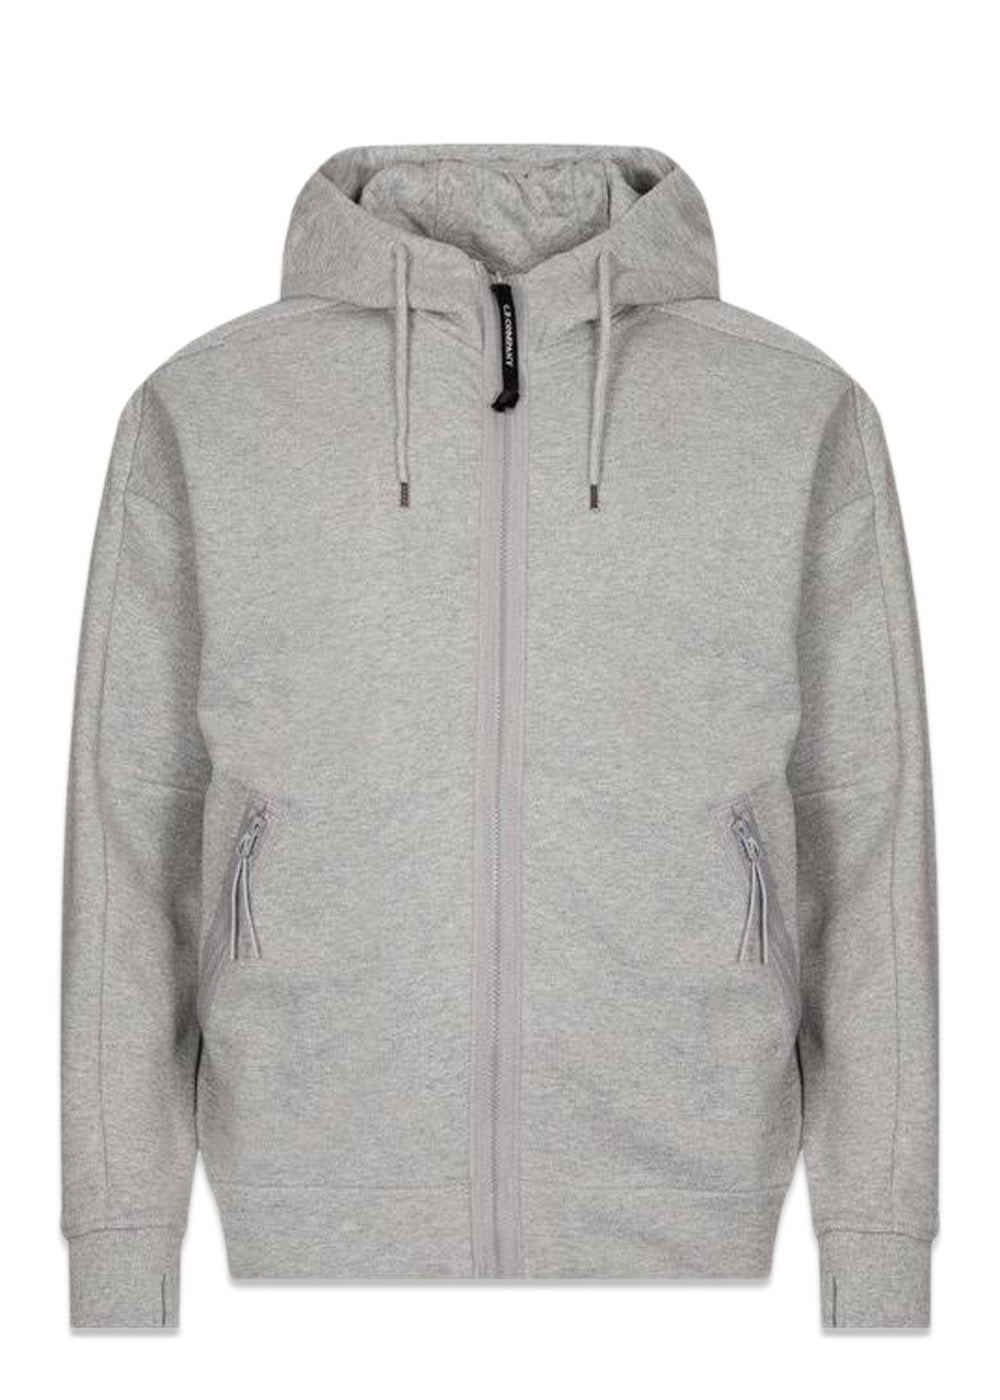 C.P. Companys Sweatshirts-Hooded Open - Grey Melang. Køb hoodies her.